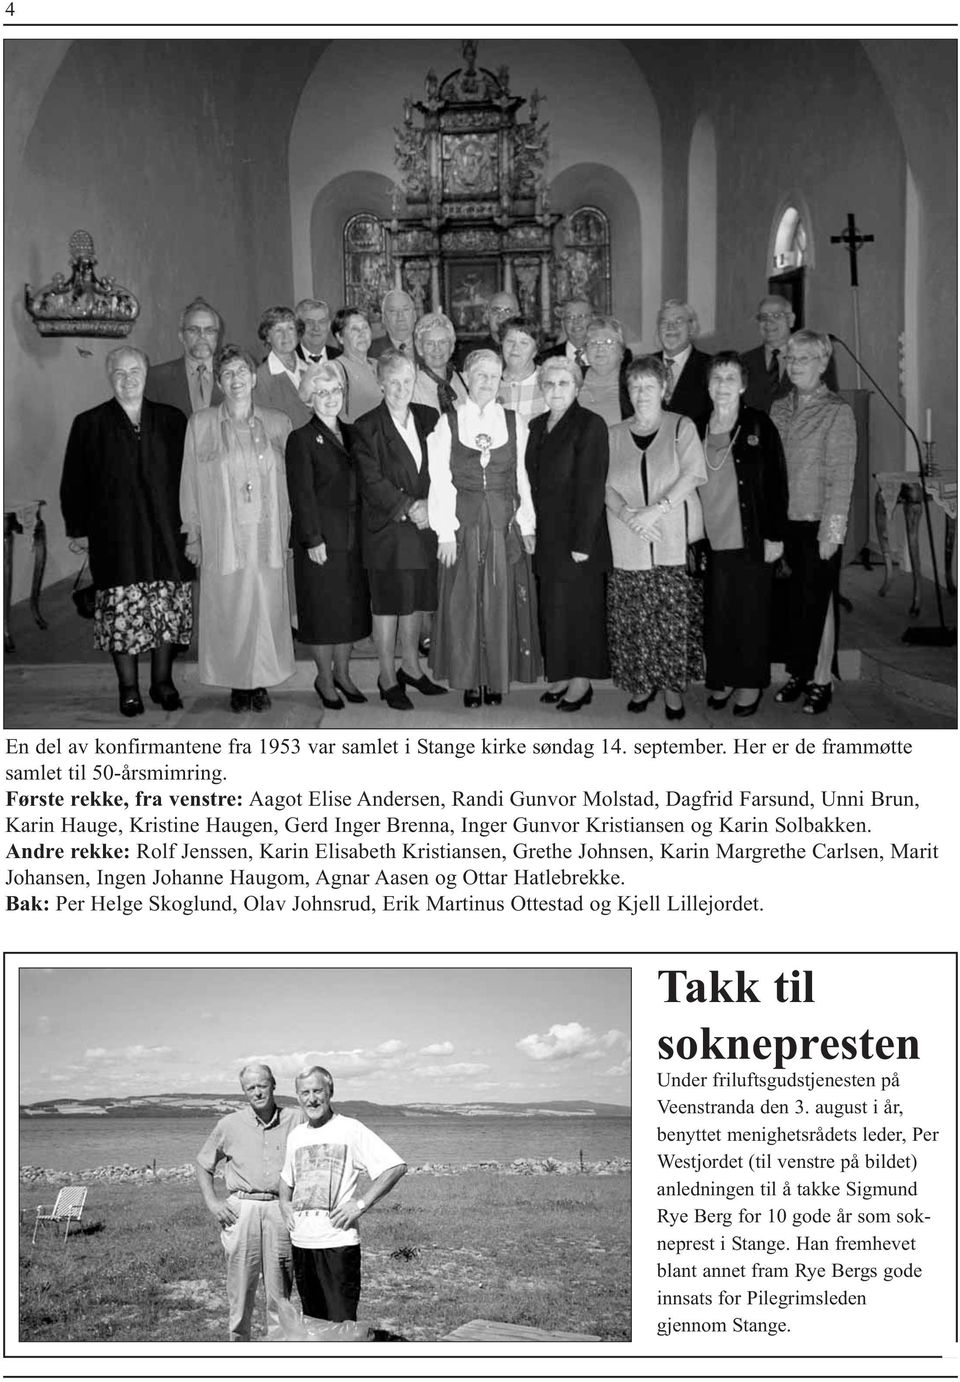 Andre rekke: Rolf Jenssen, Karin Elisabeth Kristiansen, Grethe Johnsen, Karin Margrethe Carlsen, Marit Johansen, Ingen Johanne Haugom, Agnar Aasen og Ottar Hatlebrekke.